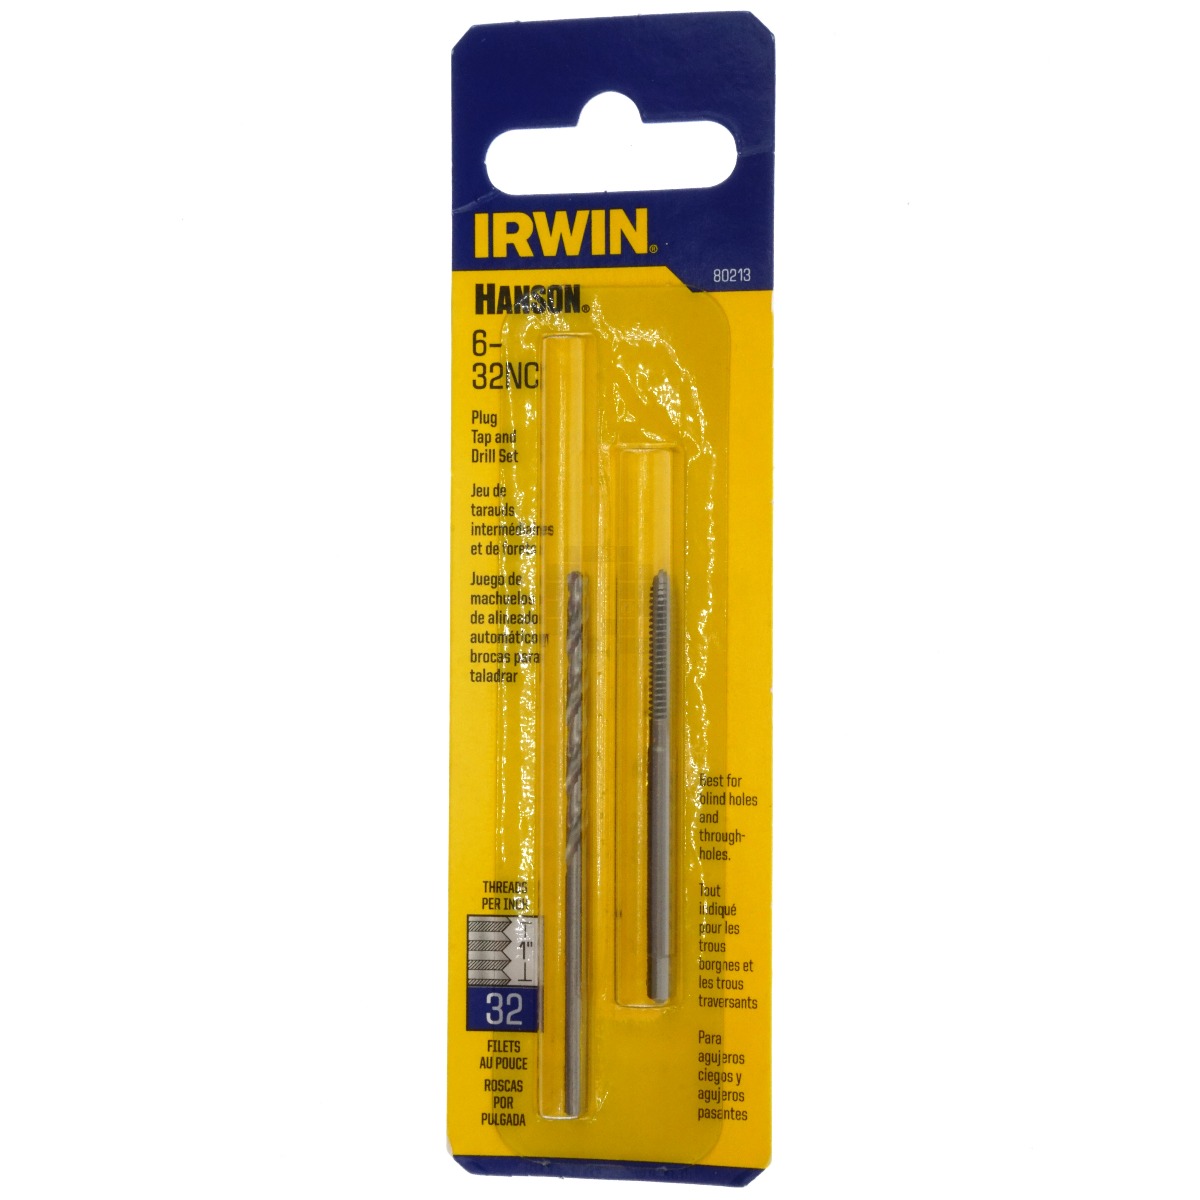 Irwin 80213 #6-32NC Plug Tap and 7/64" HSS Drill Bit Set